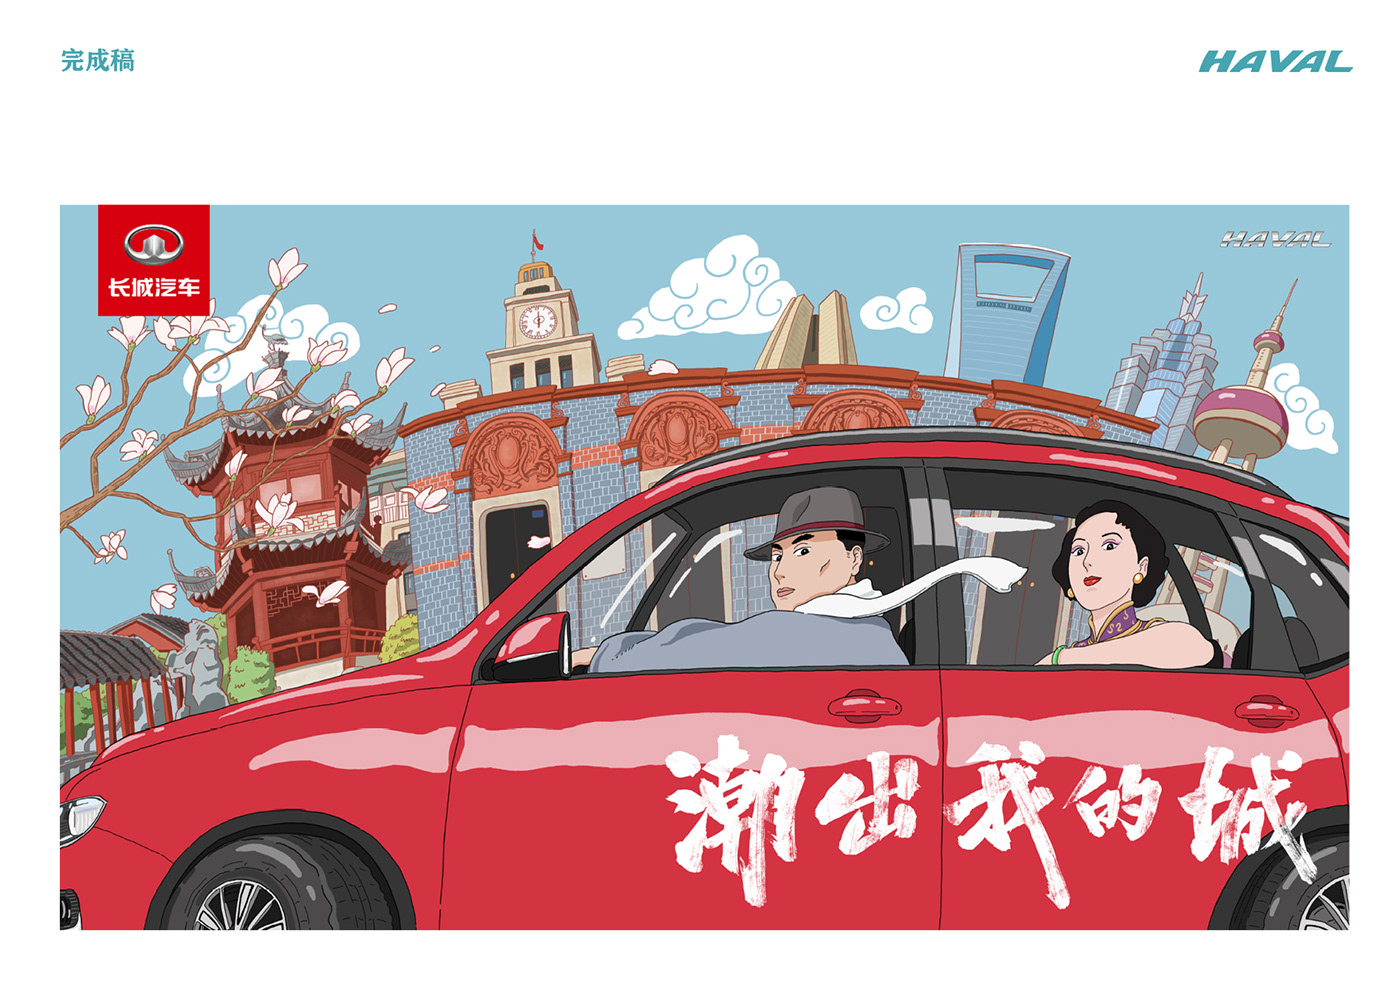 ILLUSTRATION  Poster Design shanghai